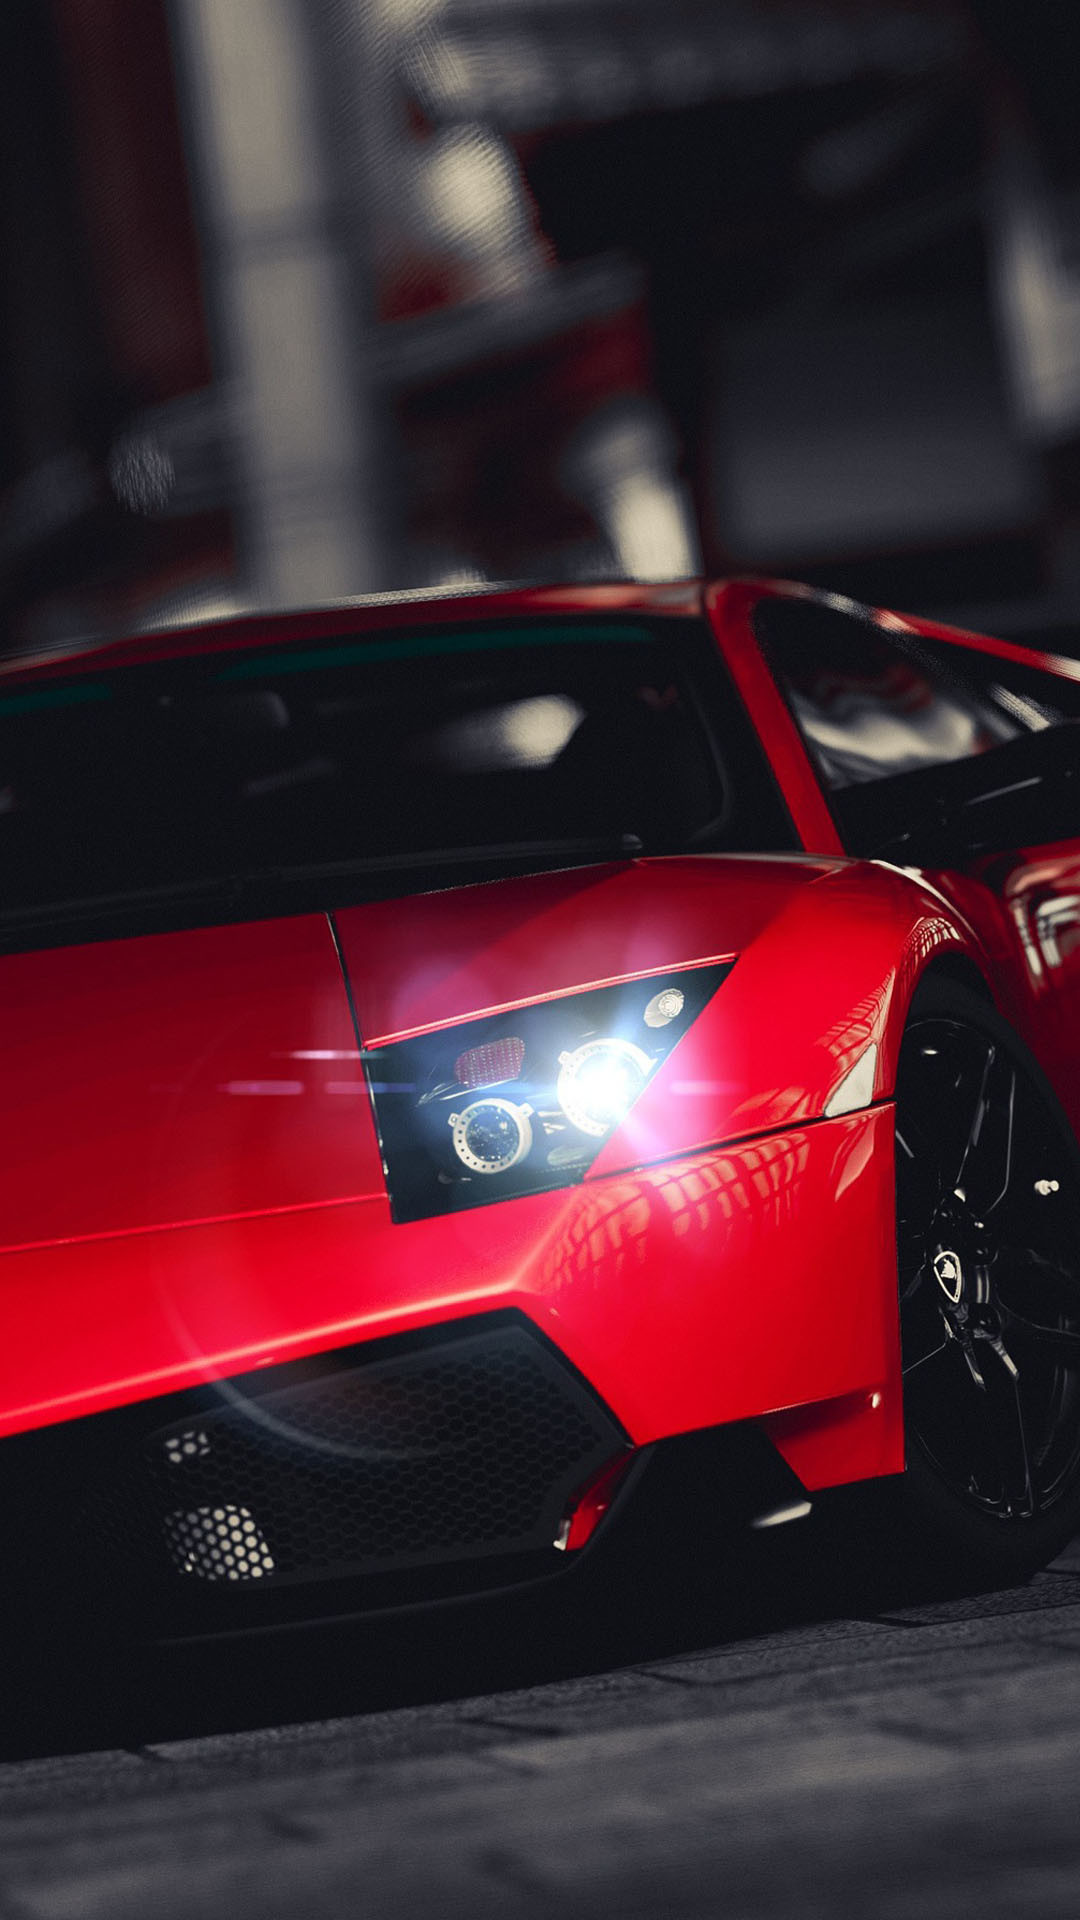 1080x1920 Lamborghini Veneno Bright Red iPhone 6 Plus HD Wallpaper ...